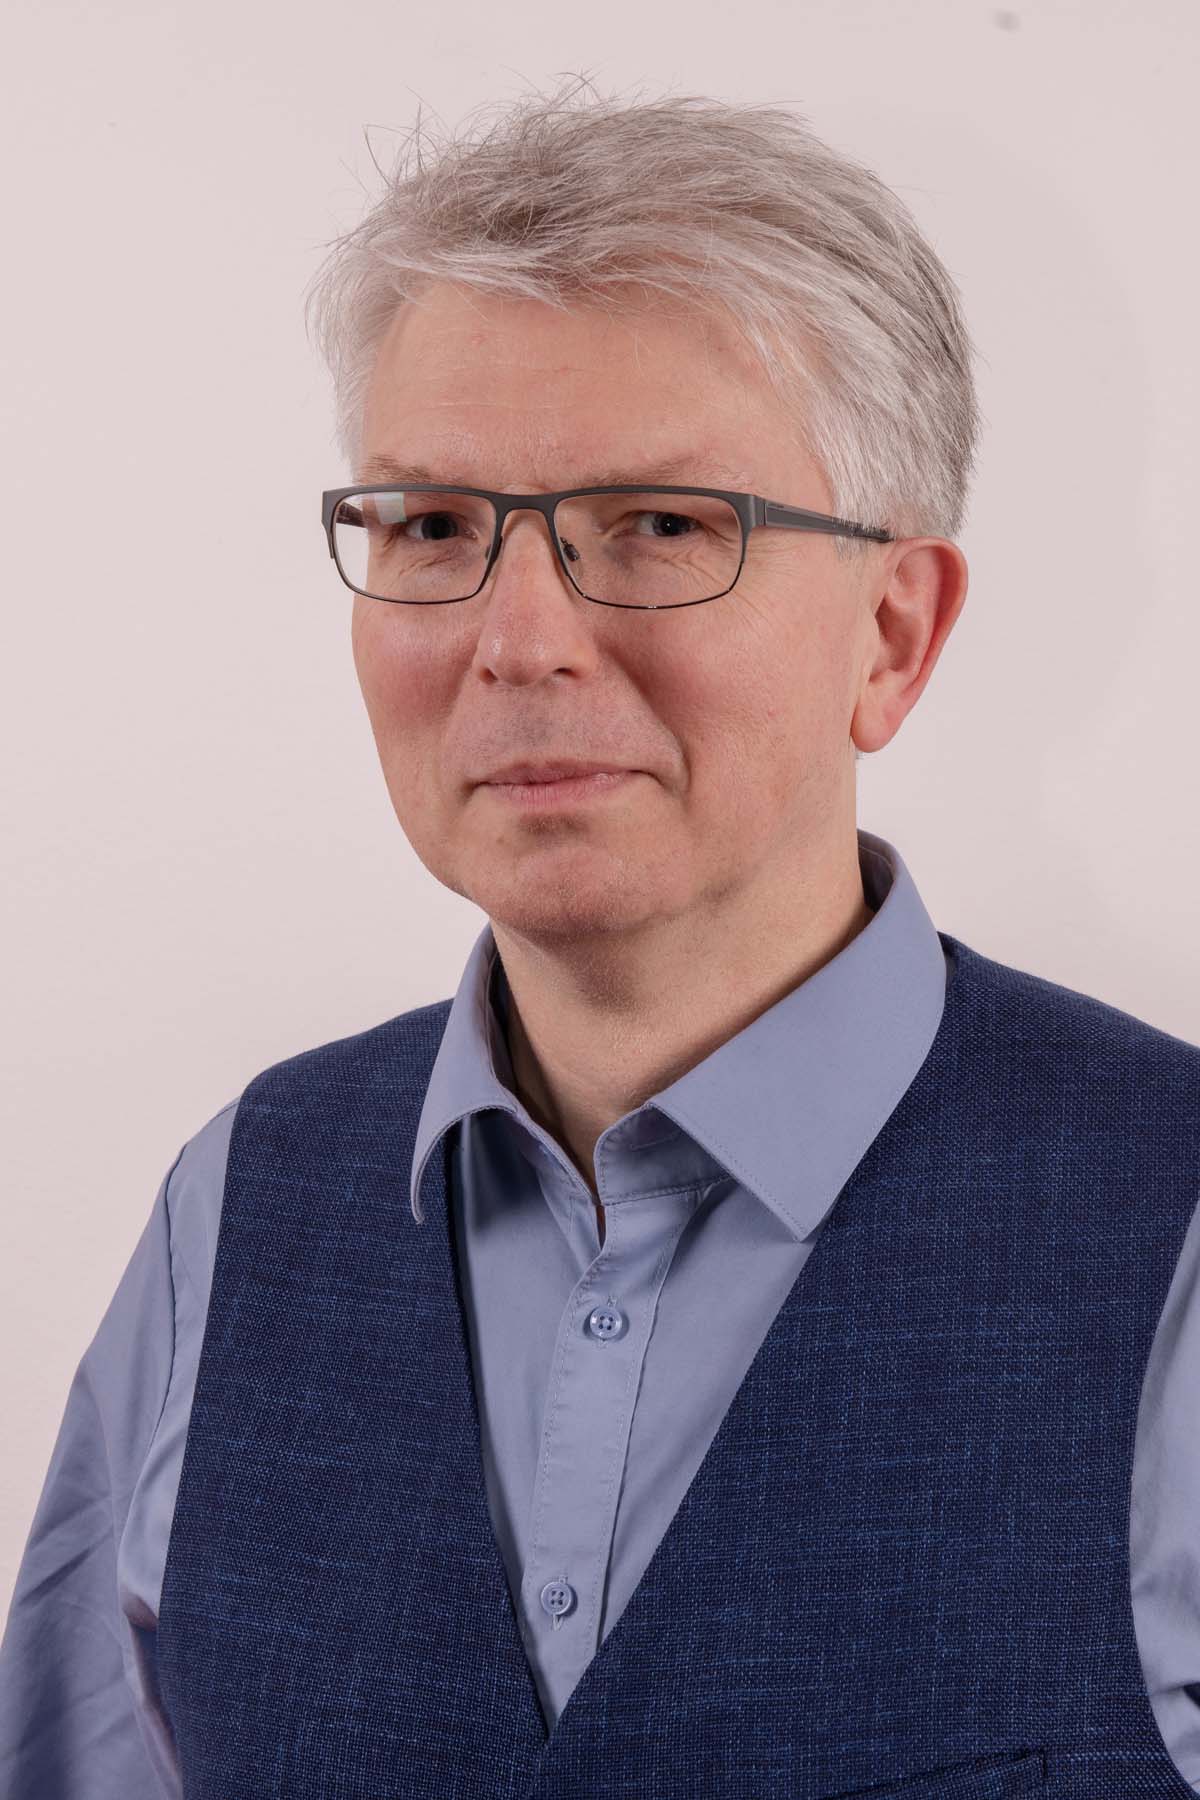 Dr. Jörg Hofmann